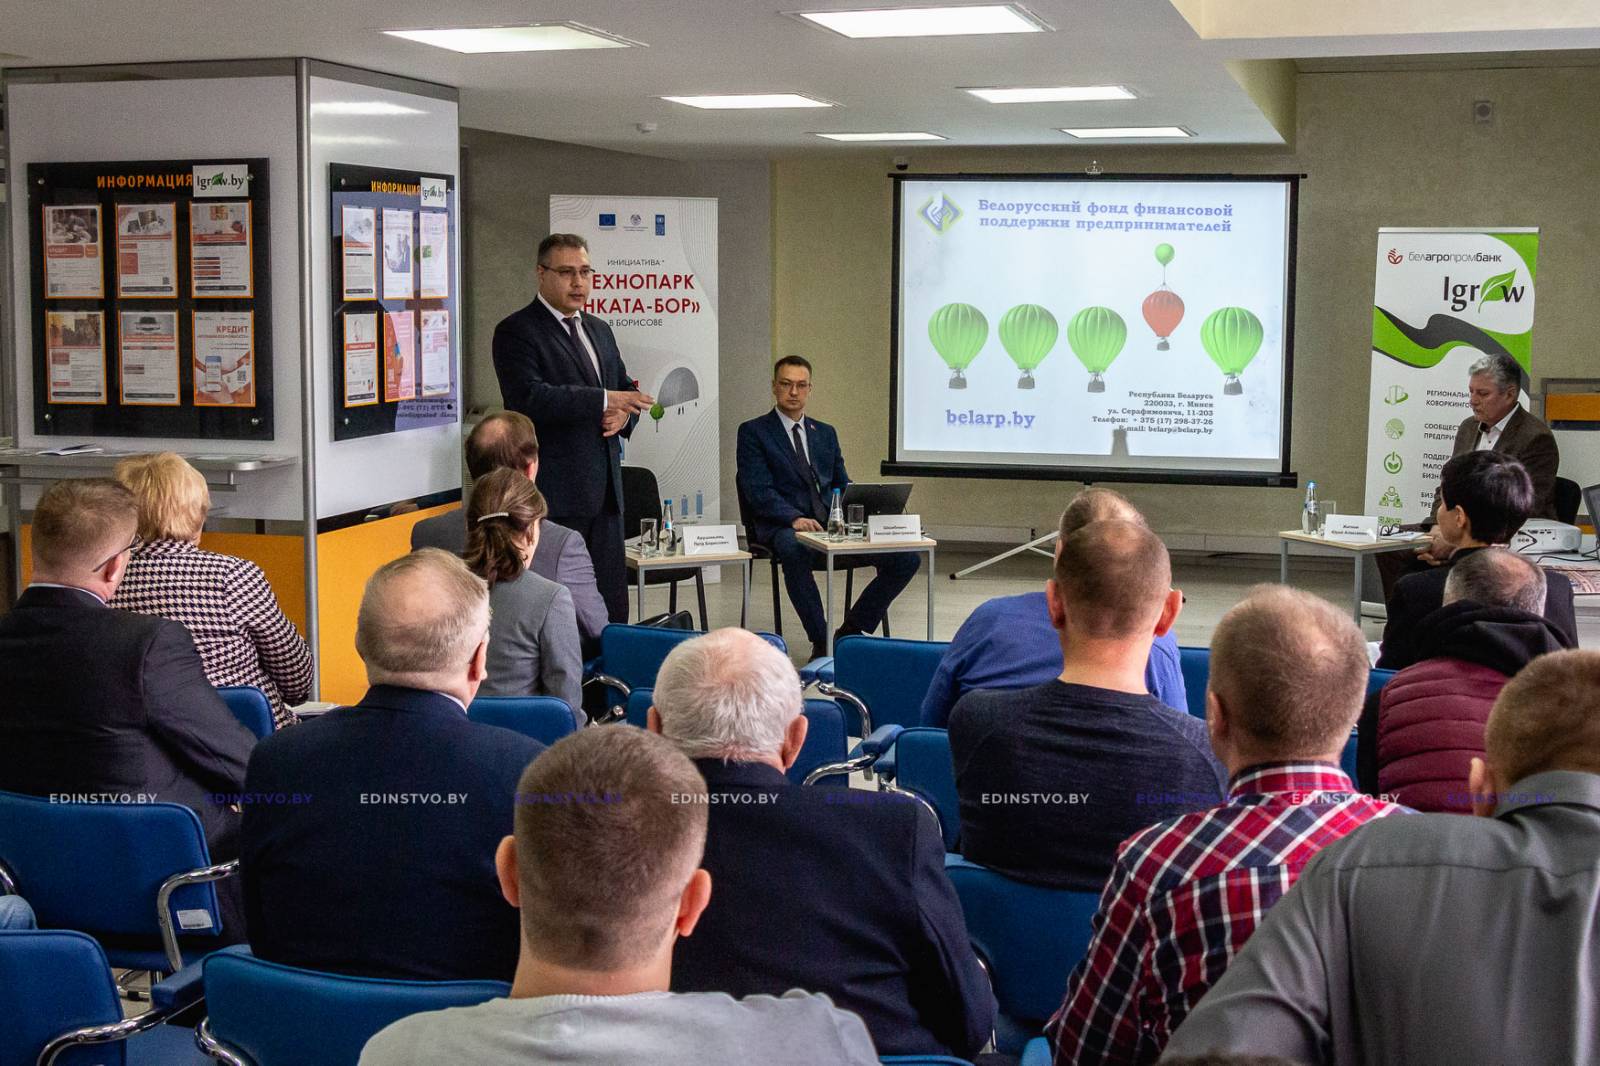 На базе Центра притяжения Igrow ОАО «Белагропромбанк» состоялось заседание совета по развитию предпринимательства Борисовского района.